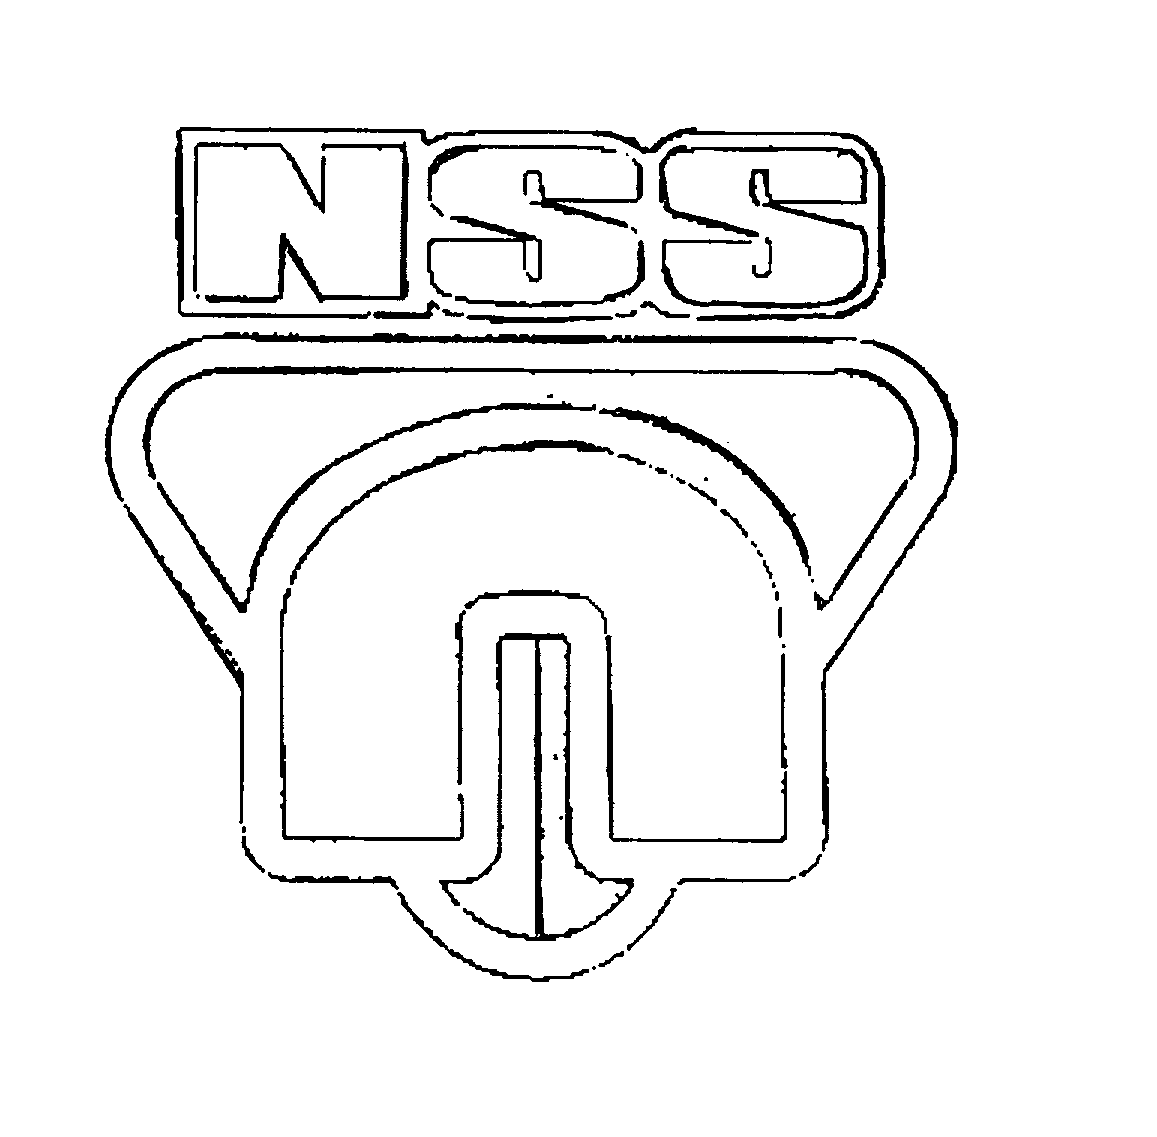  NSS N